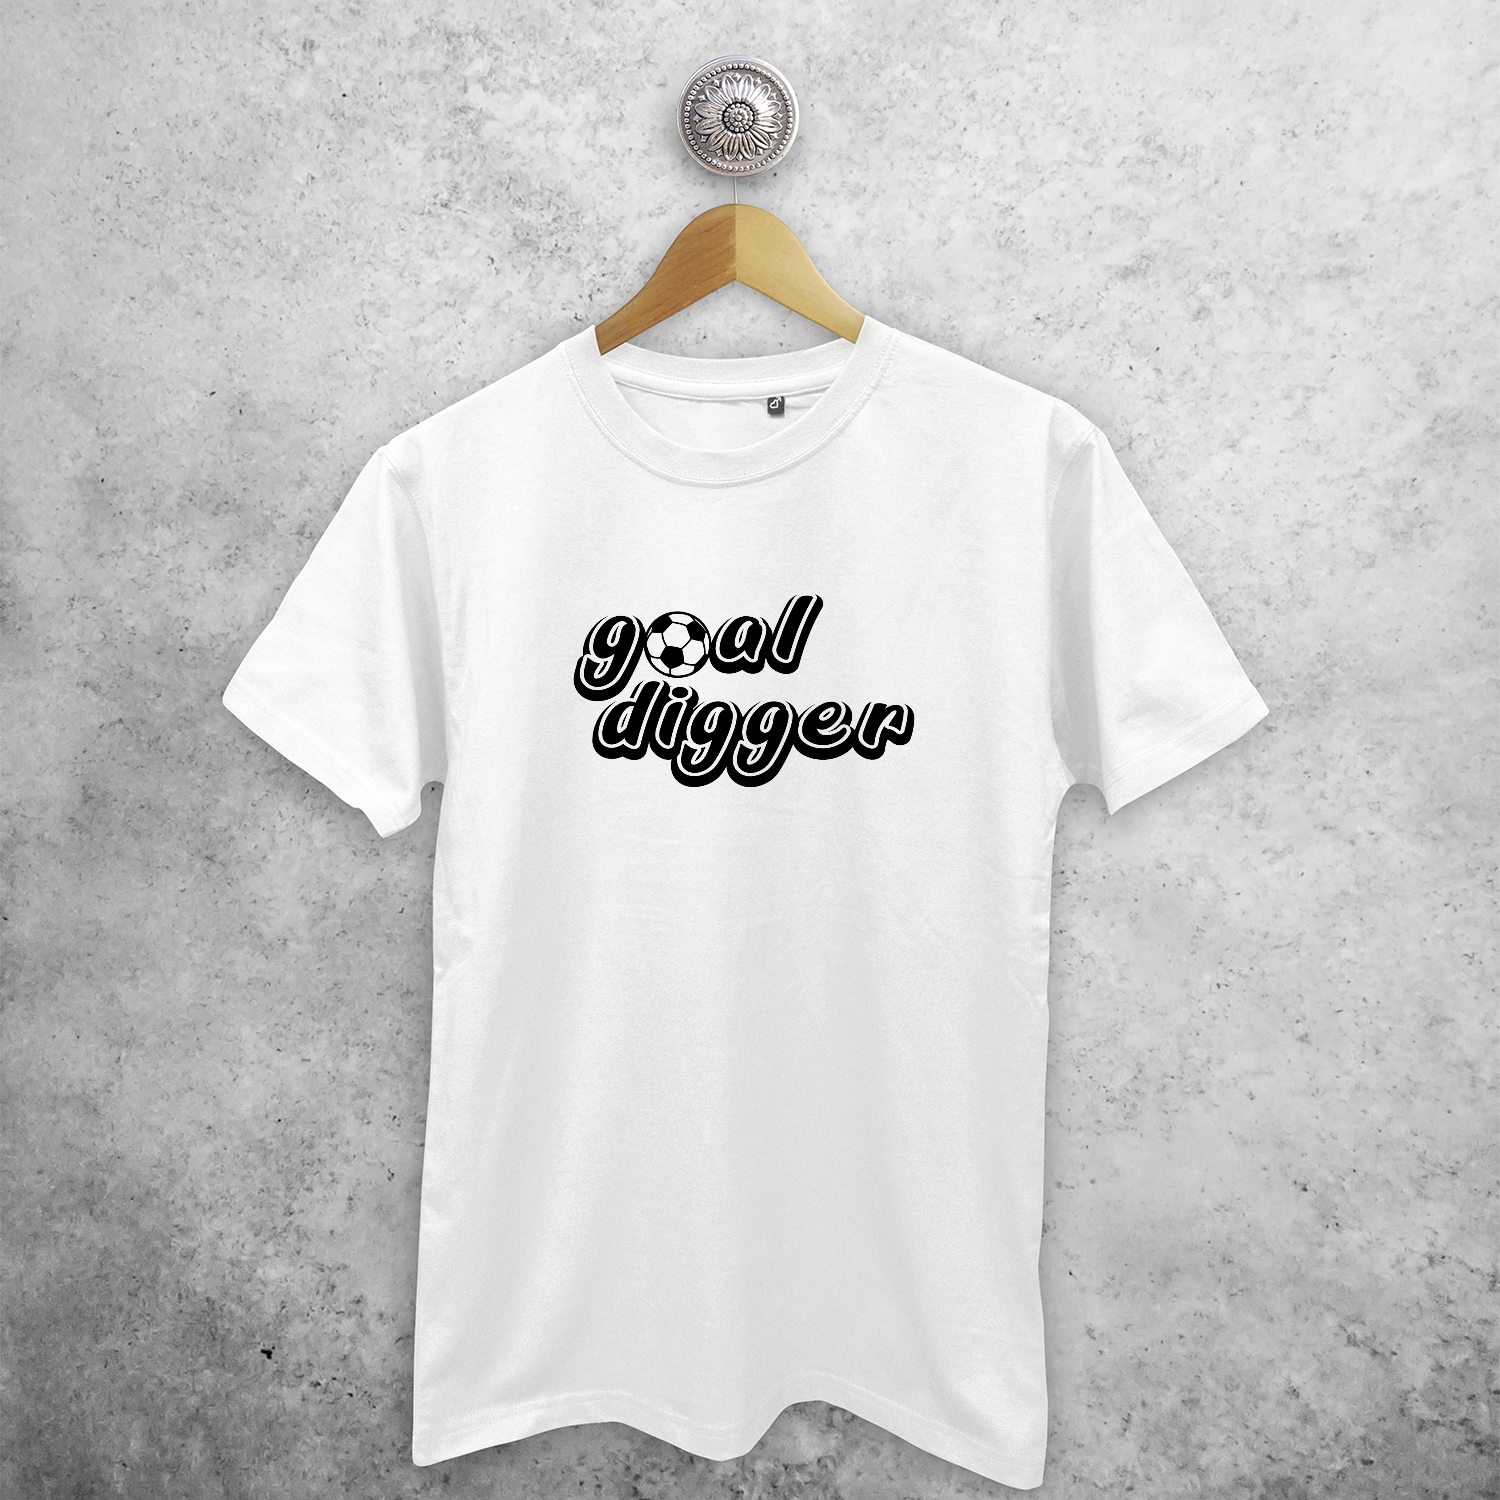 'Goal digger' adult shirt